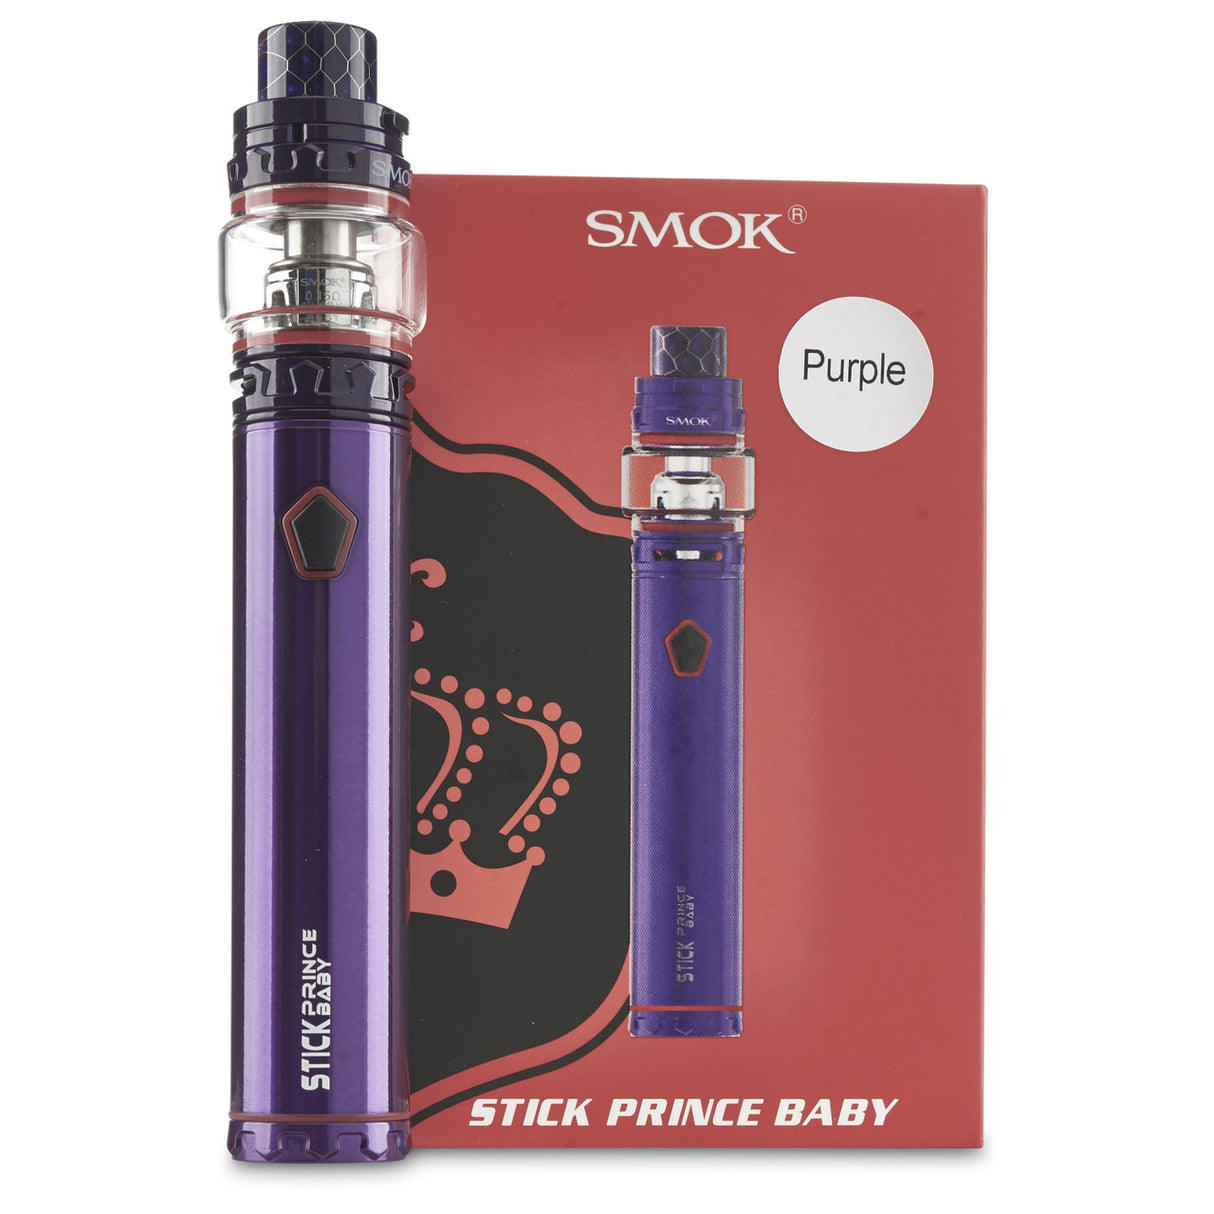 purple SMOK stick baby prince kit pen style vape kit